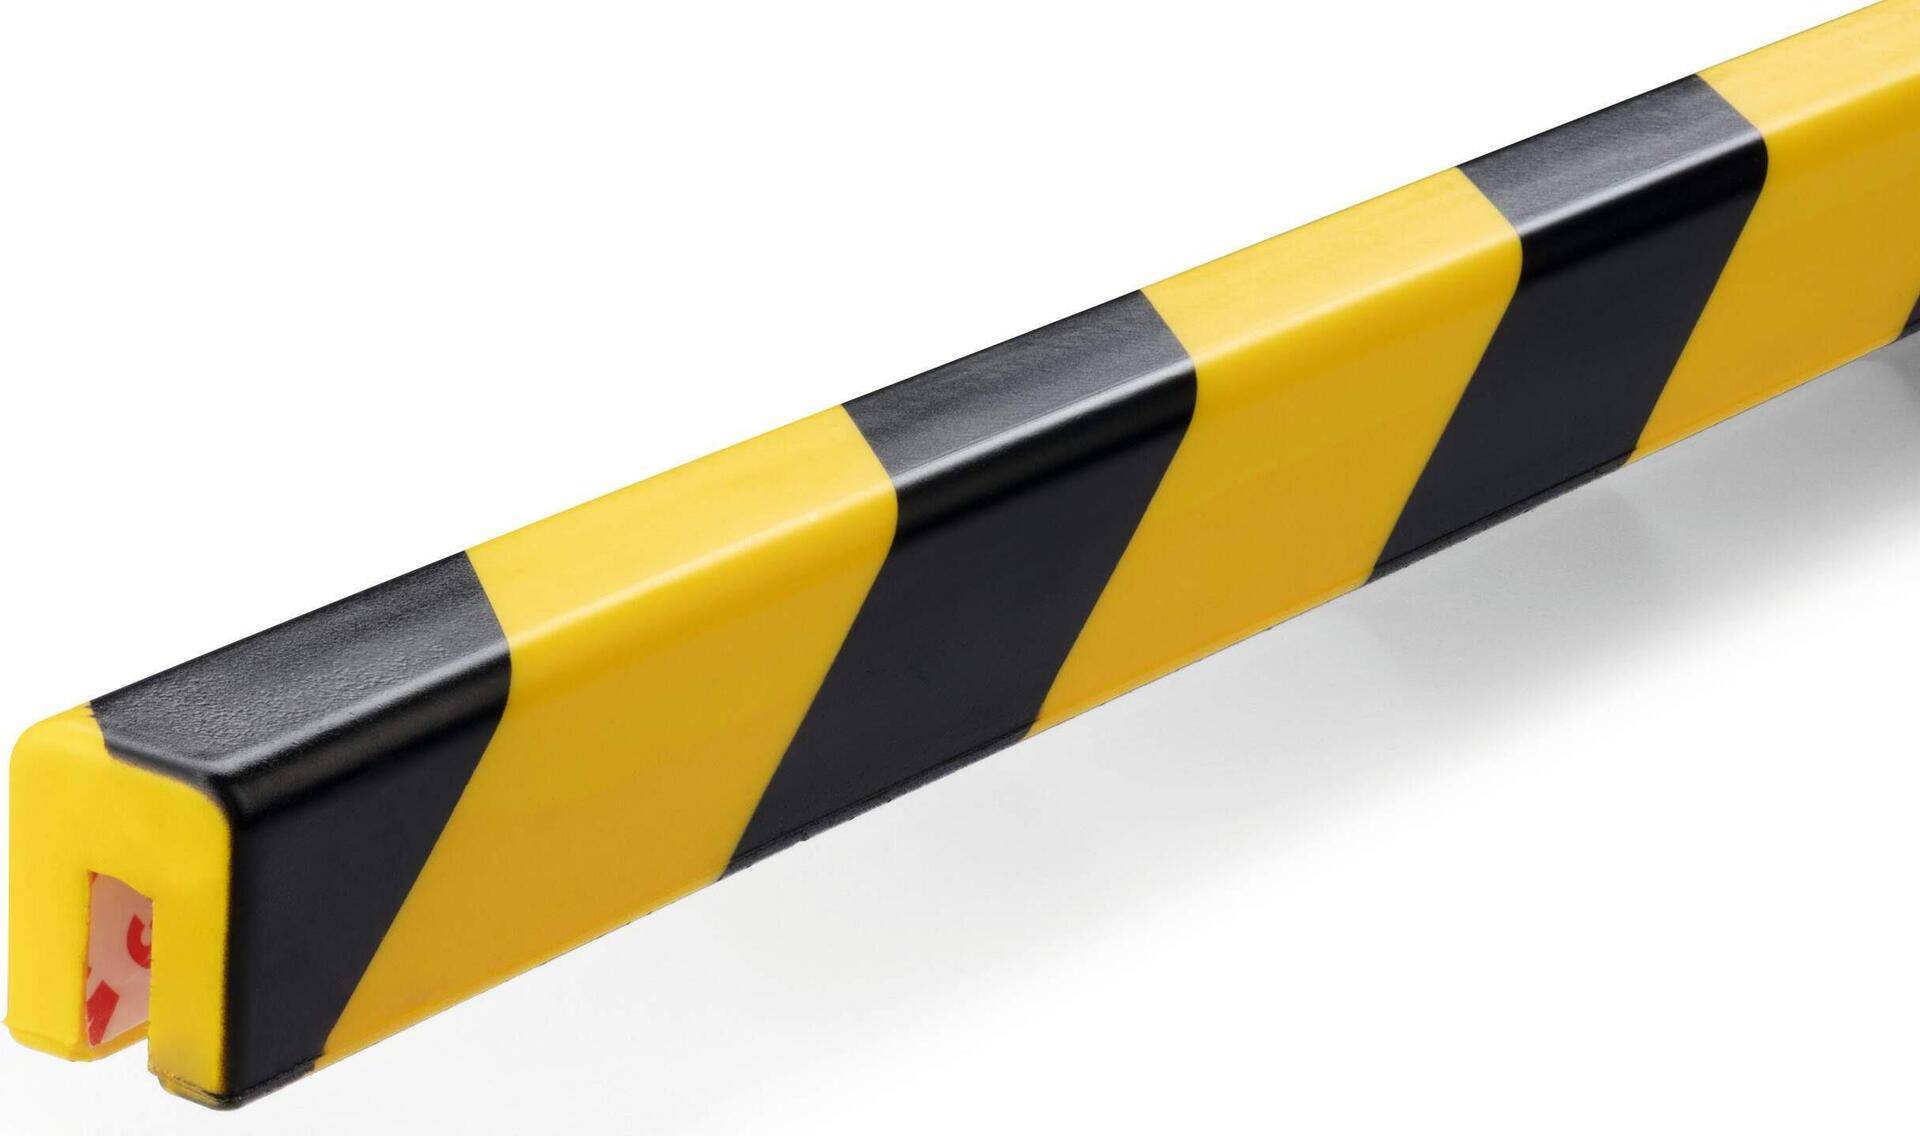 DURABLE Kantenschutzprofil E8, Farbe: gelb/schwarz, Art. Nr. 1127130, 5 ST (1127130) von Durable